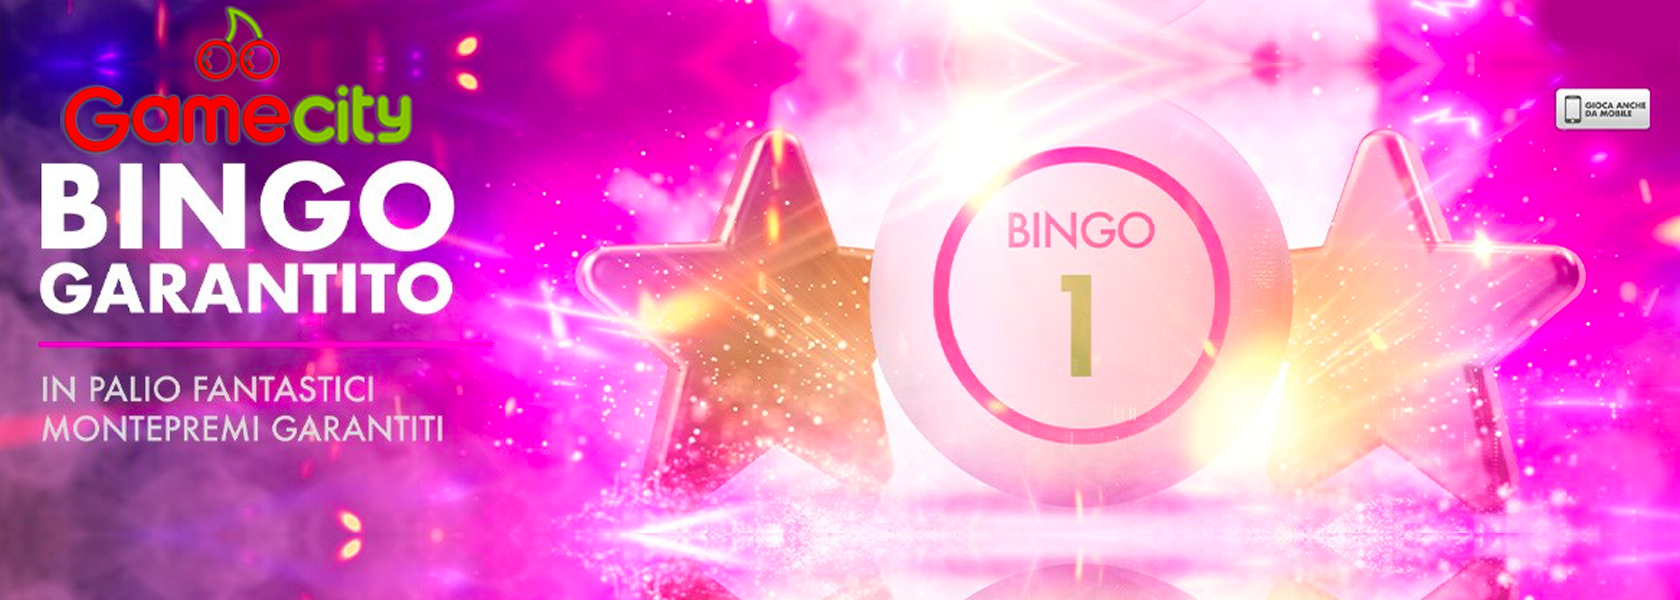 bingo garantito